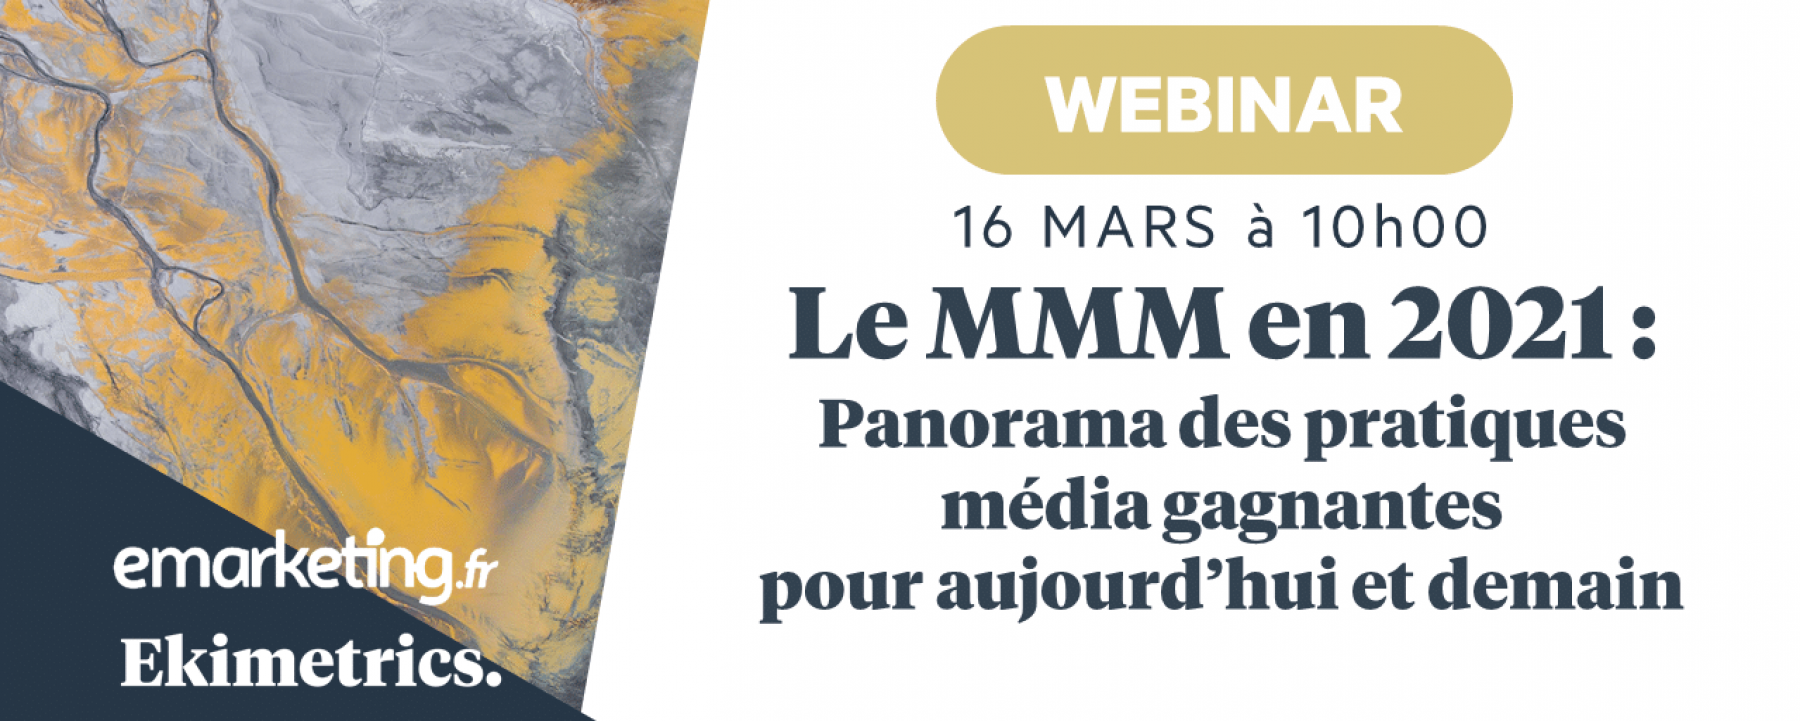 Le MMM en 2021 : panorama des pratiques média gagnantes pour aujourd’hui et demain, organisé par Netmedia Group le 16 mars